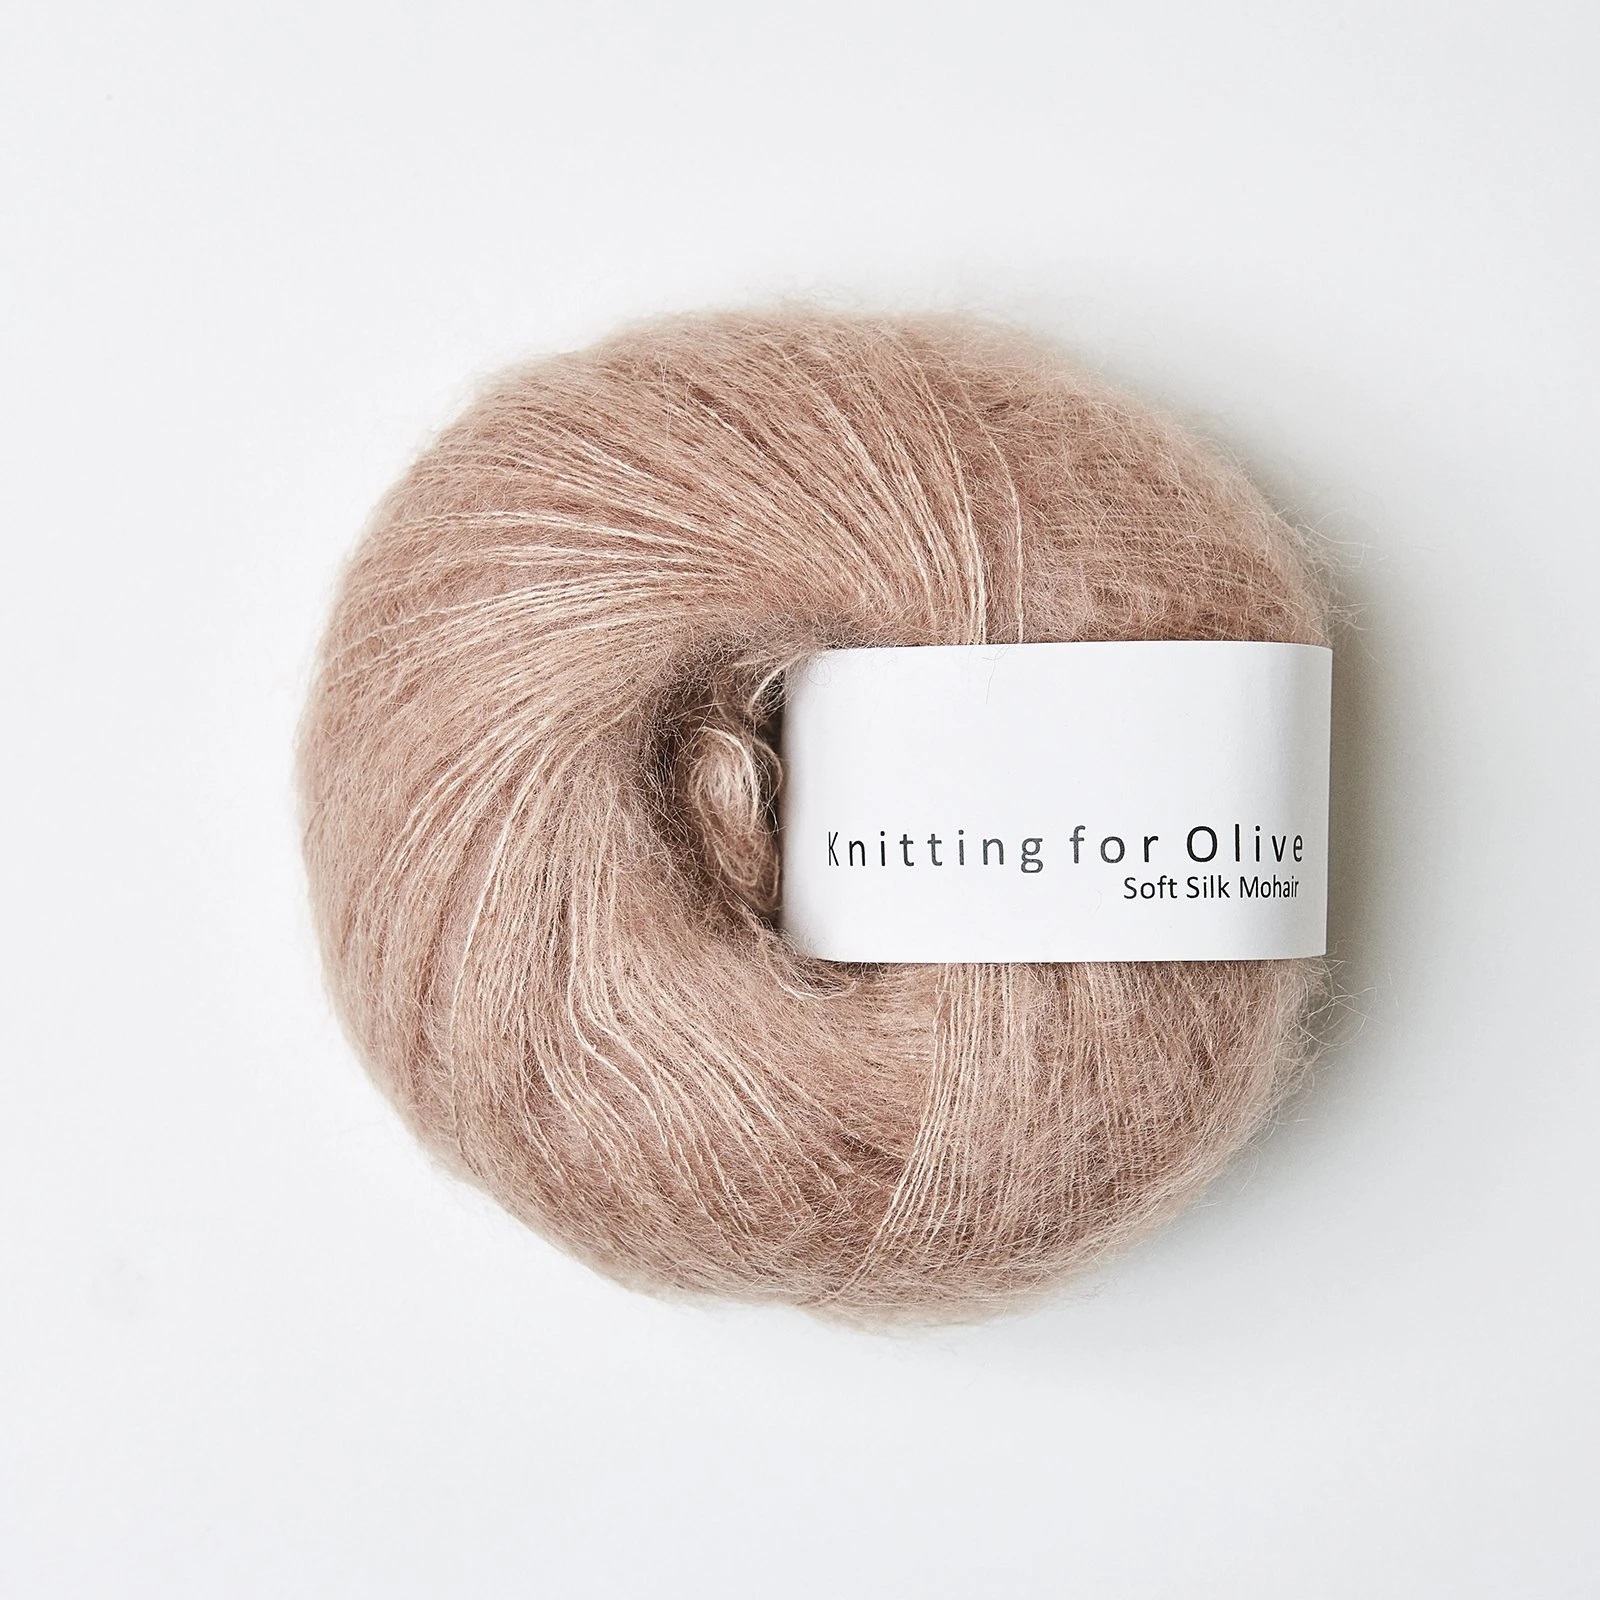 Knitting_for_olive_Soft_Silk_Mohair_rosaler